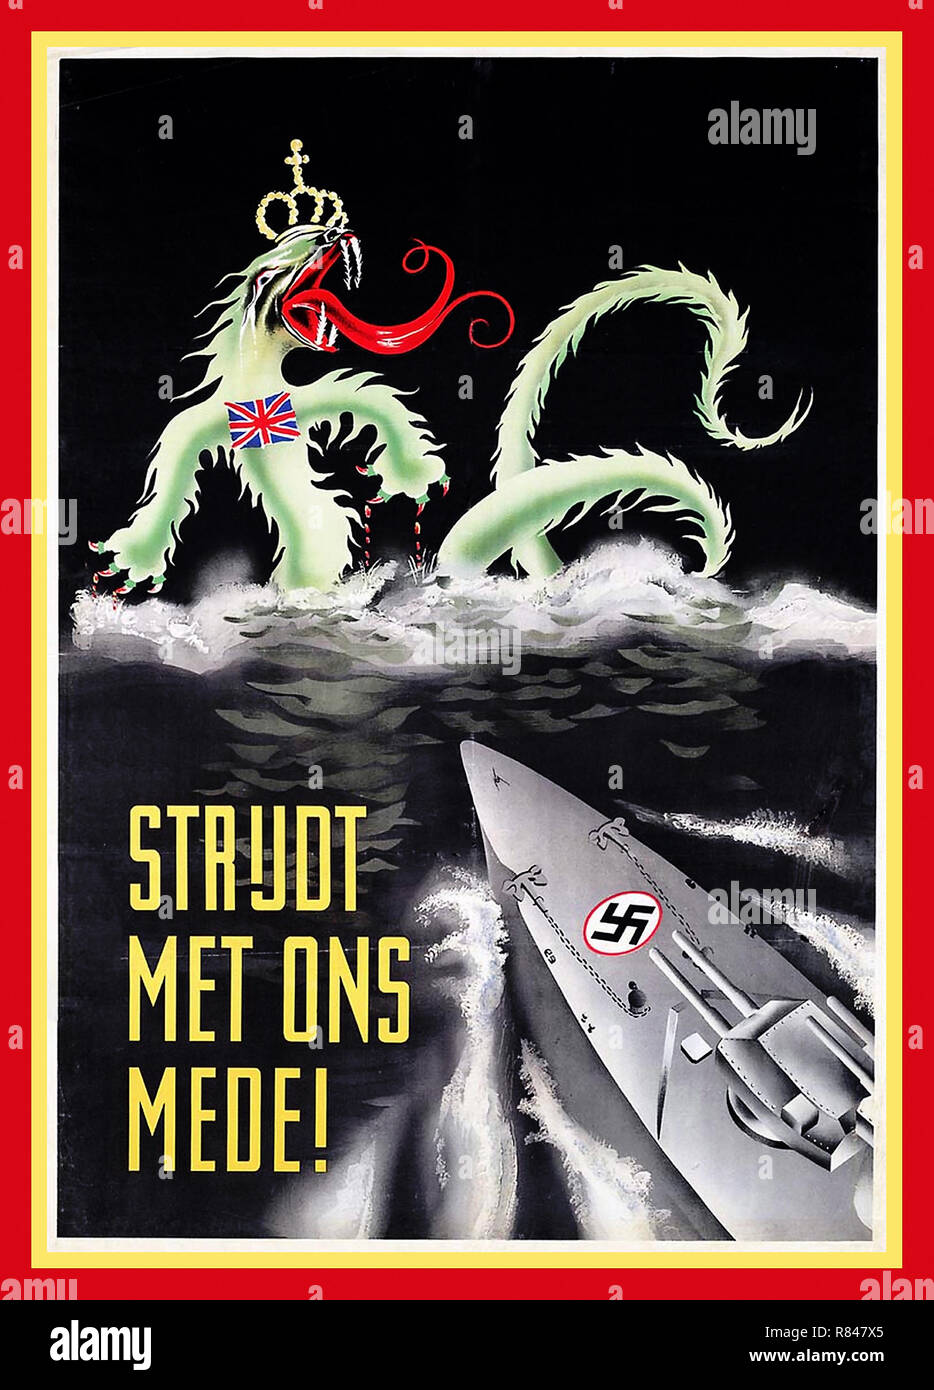 Vintage WW2 1940 affiche de propagande nazie pour la Hollande en néerlandais "lutte avec nous !" illustrant une croix gammée nazie moderne Battleship augmentant par les vagues vers un British Sea Devil avec couronne et Union Jack insignia Banque D'Images